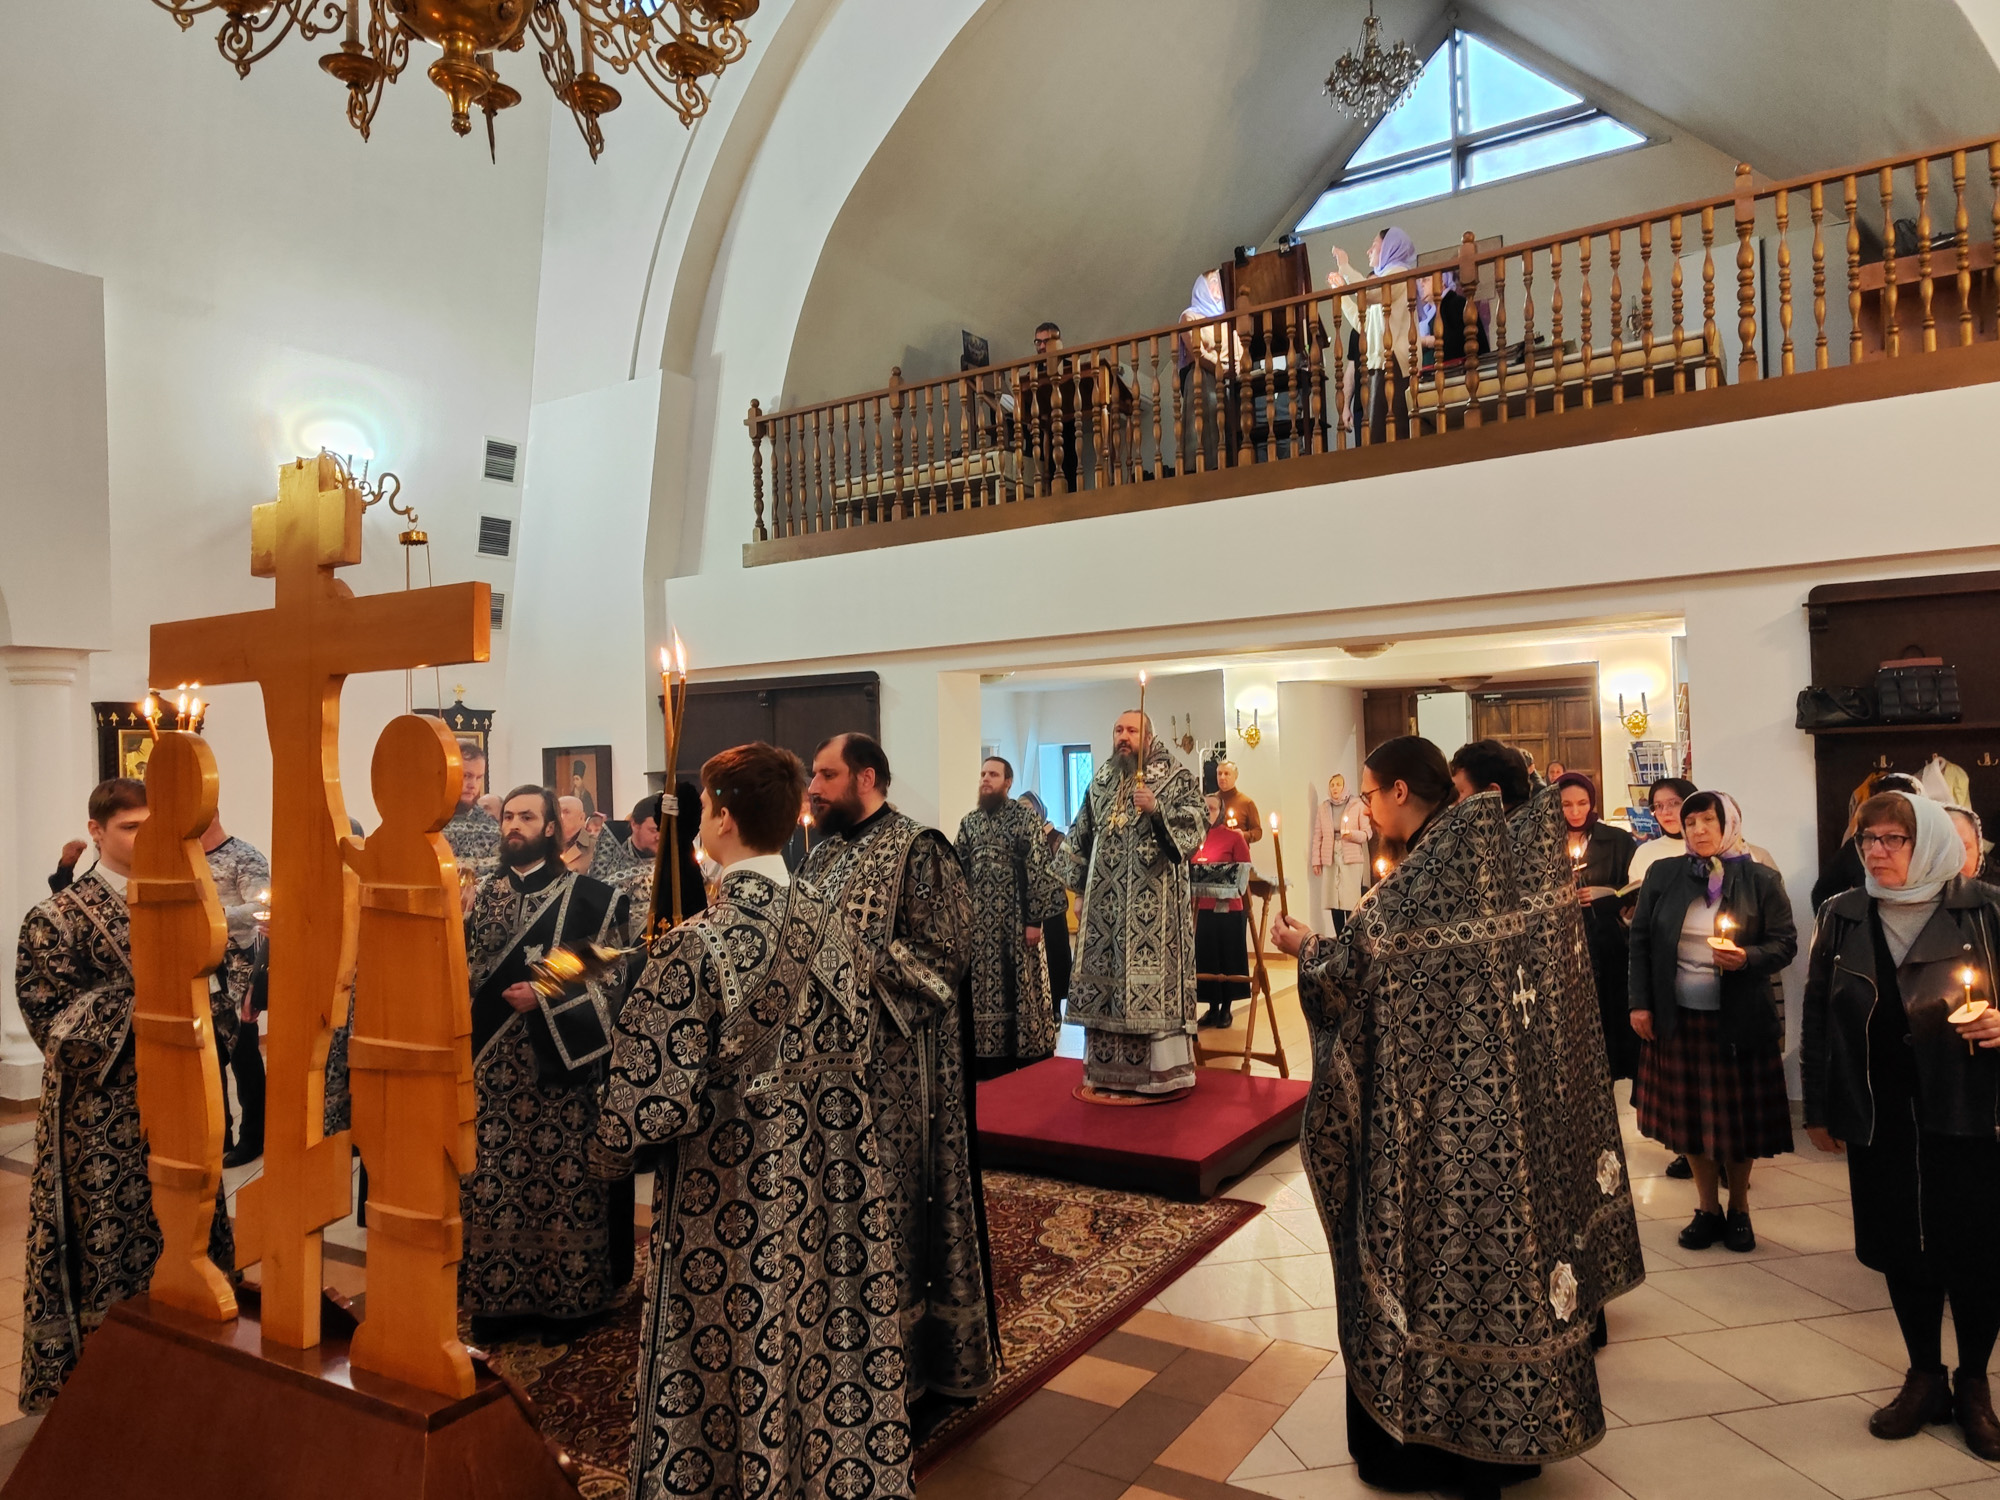 Епископ Варфоломей совершил Пассию в храме Рождества Христова г. Балаково